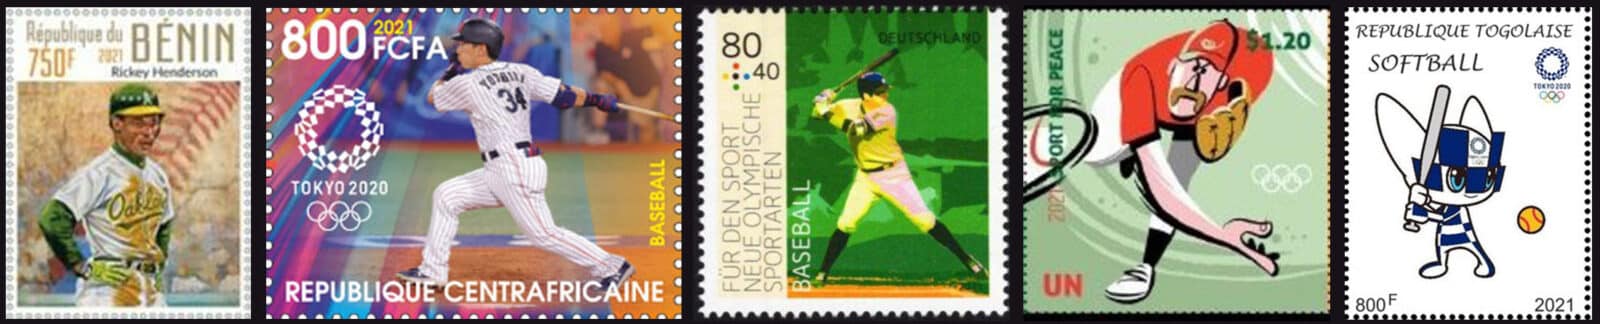 2021 Baseball Postage Stamps header